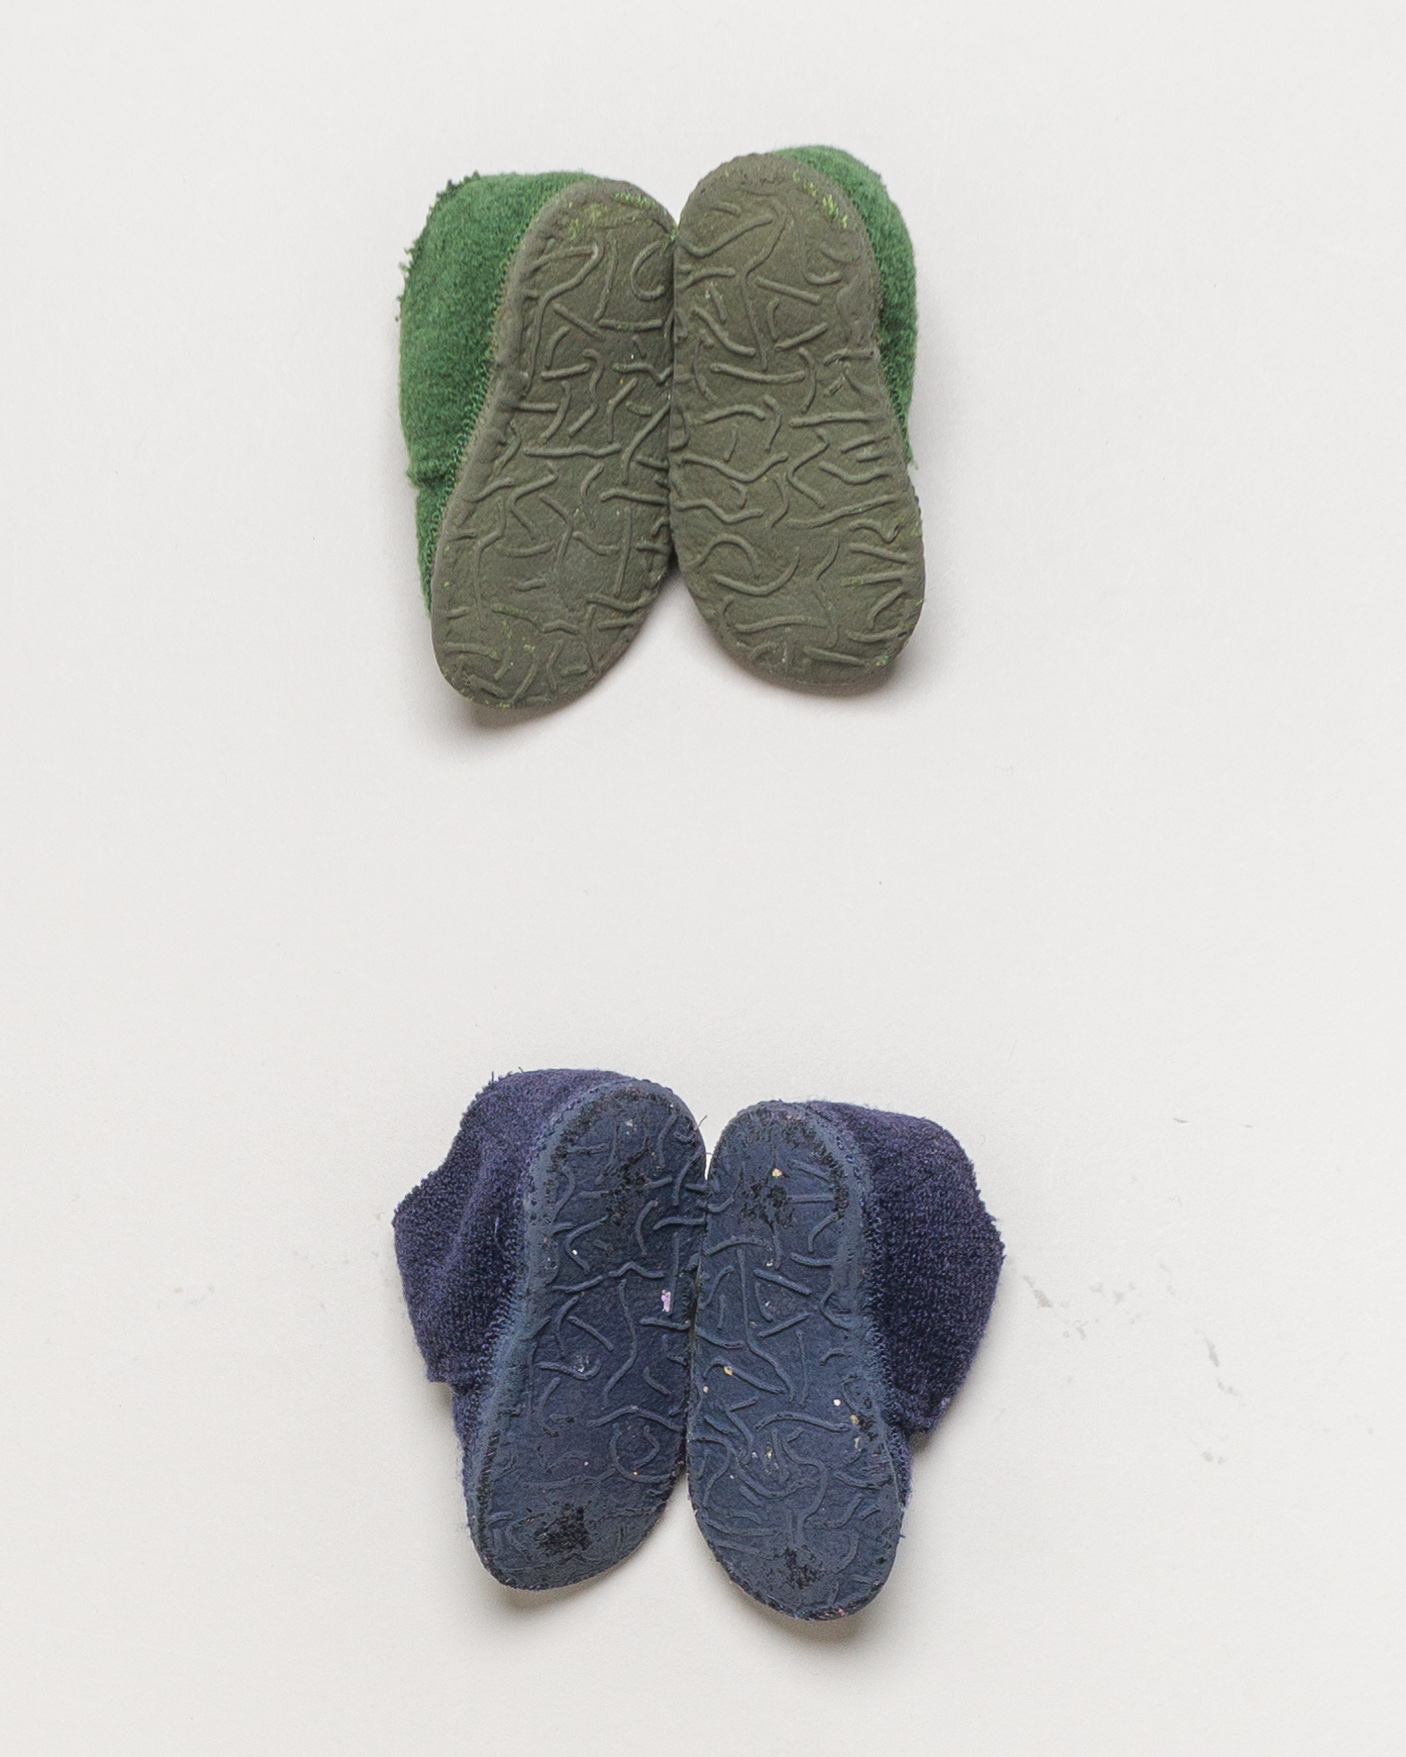 1 Paar Schuhe Gr. 20 – Hausschuhe Nanga Blau Grün Schurwolle Klett